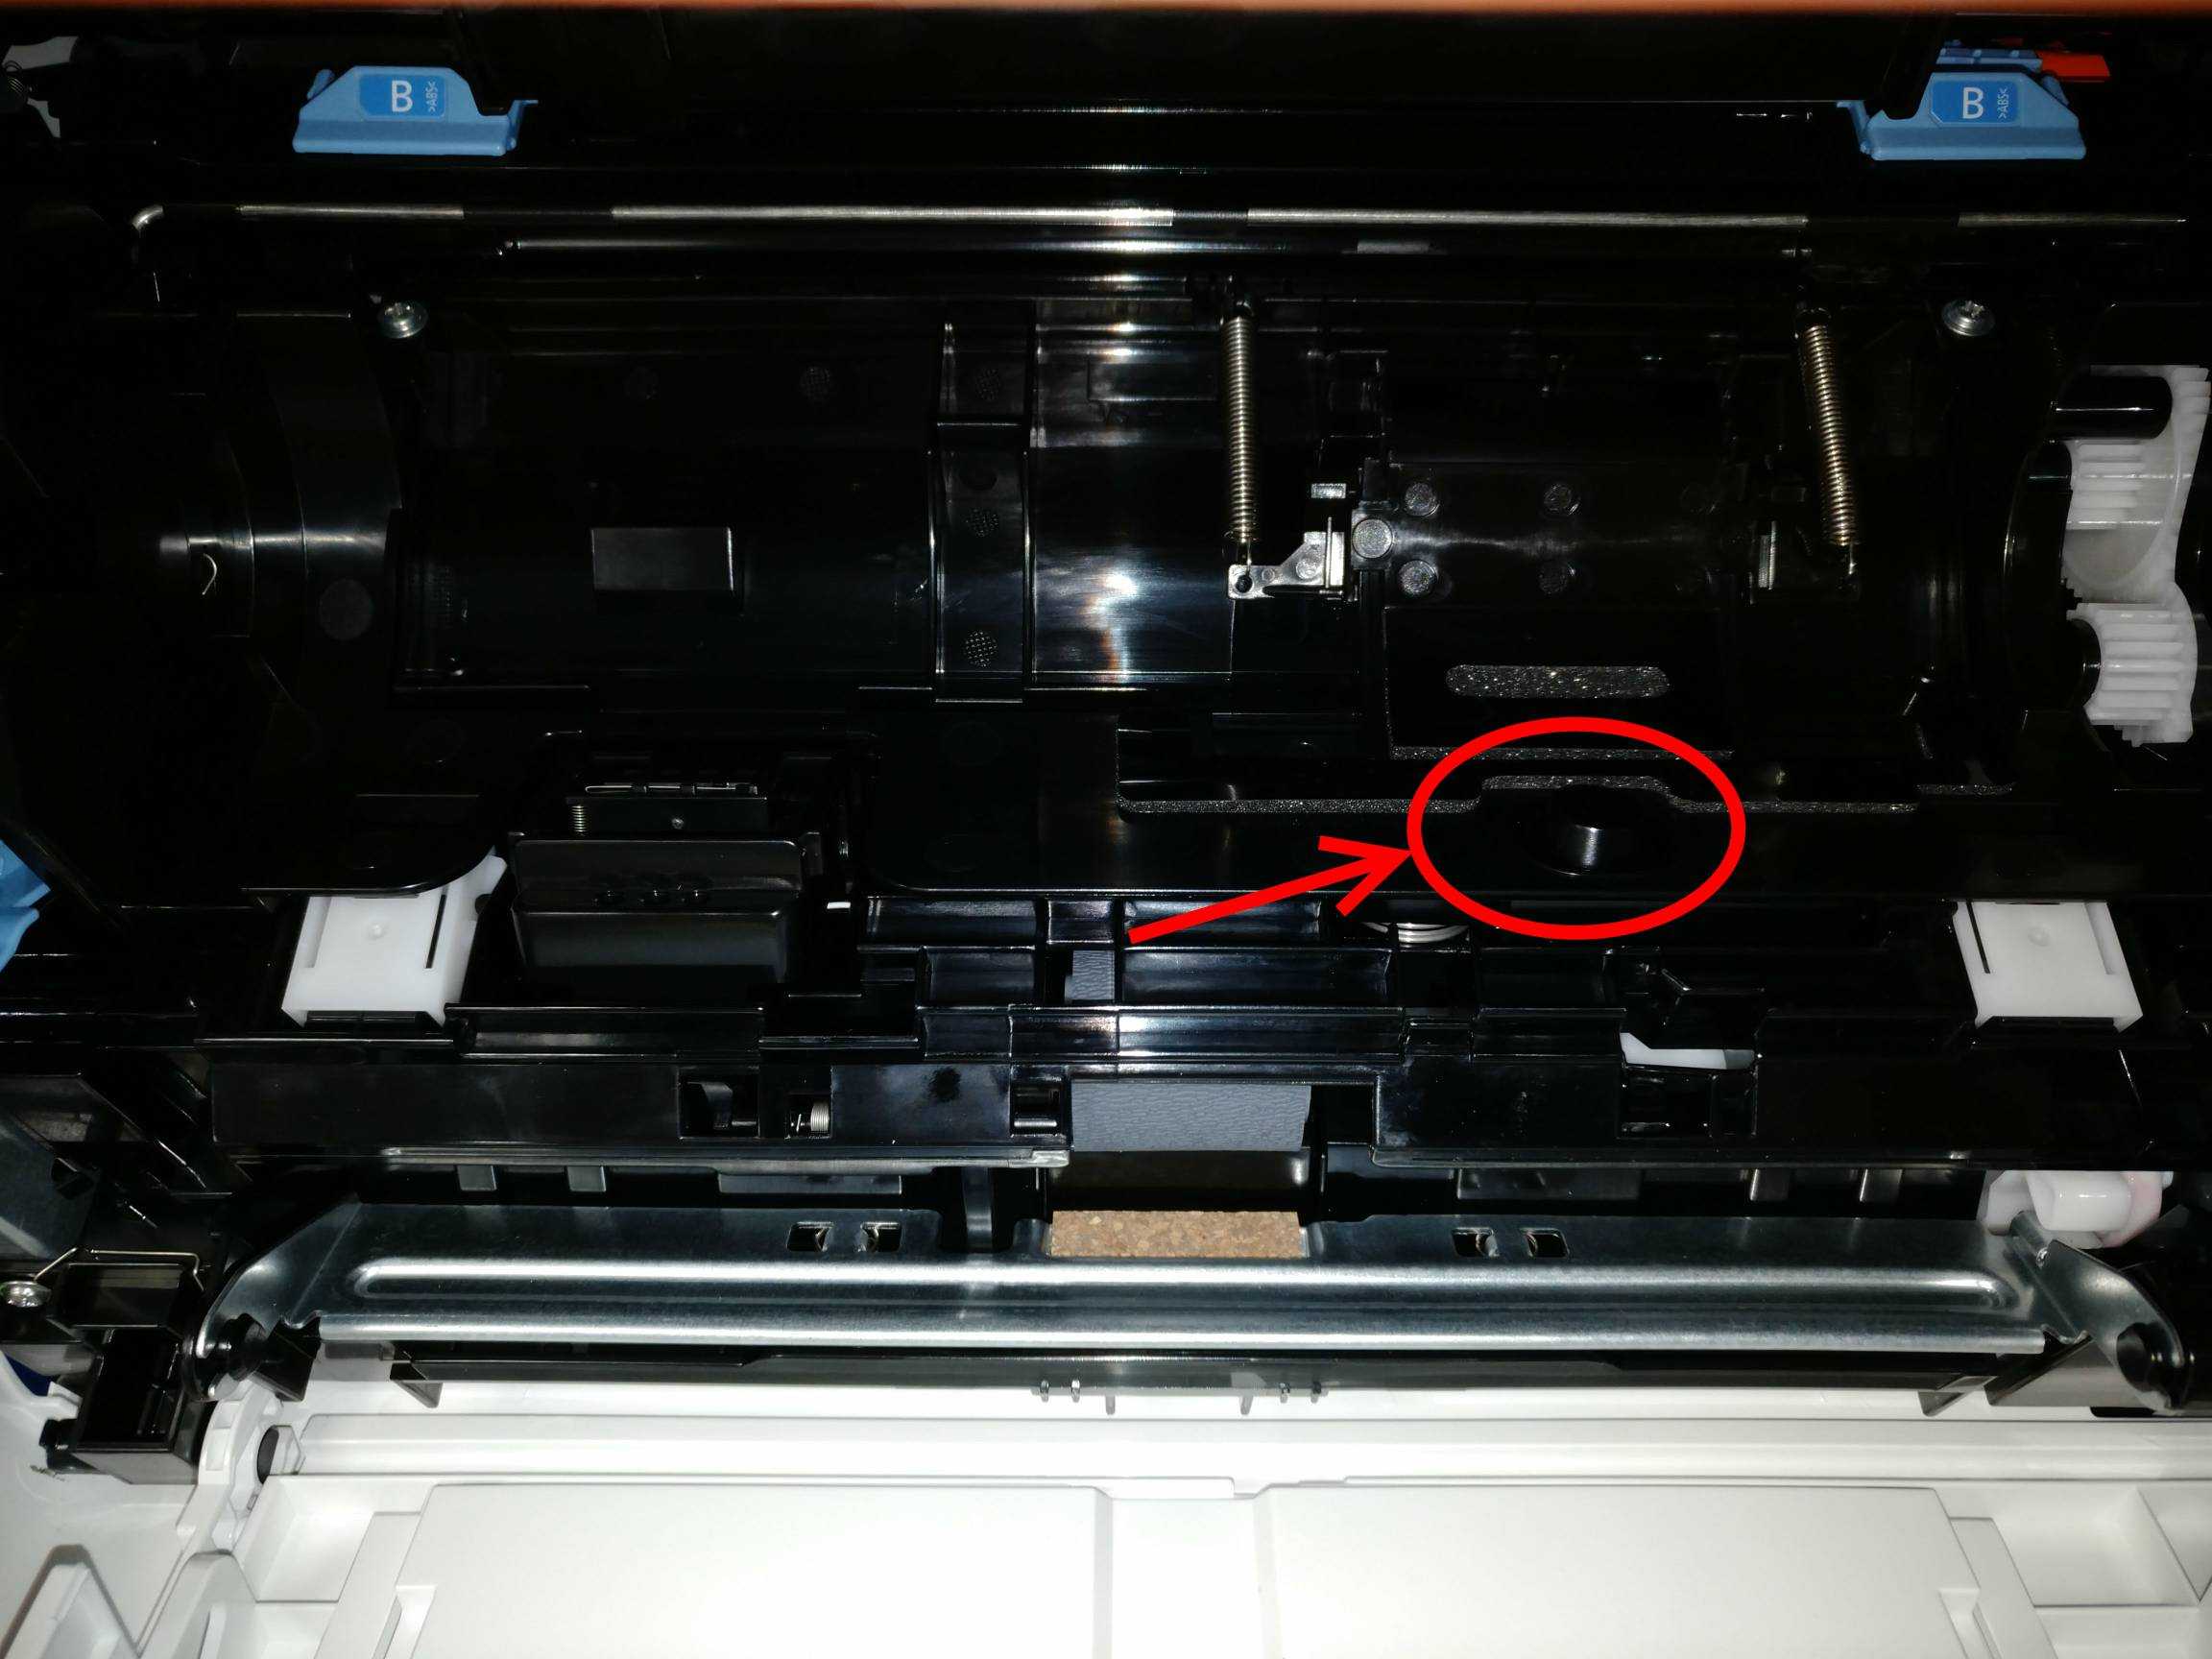 Решение проблем с принтером, при которых он не видит и не берет бумагу из лотка